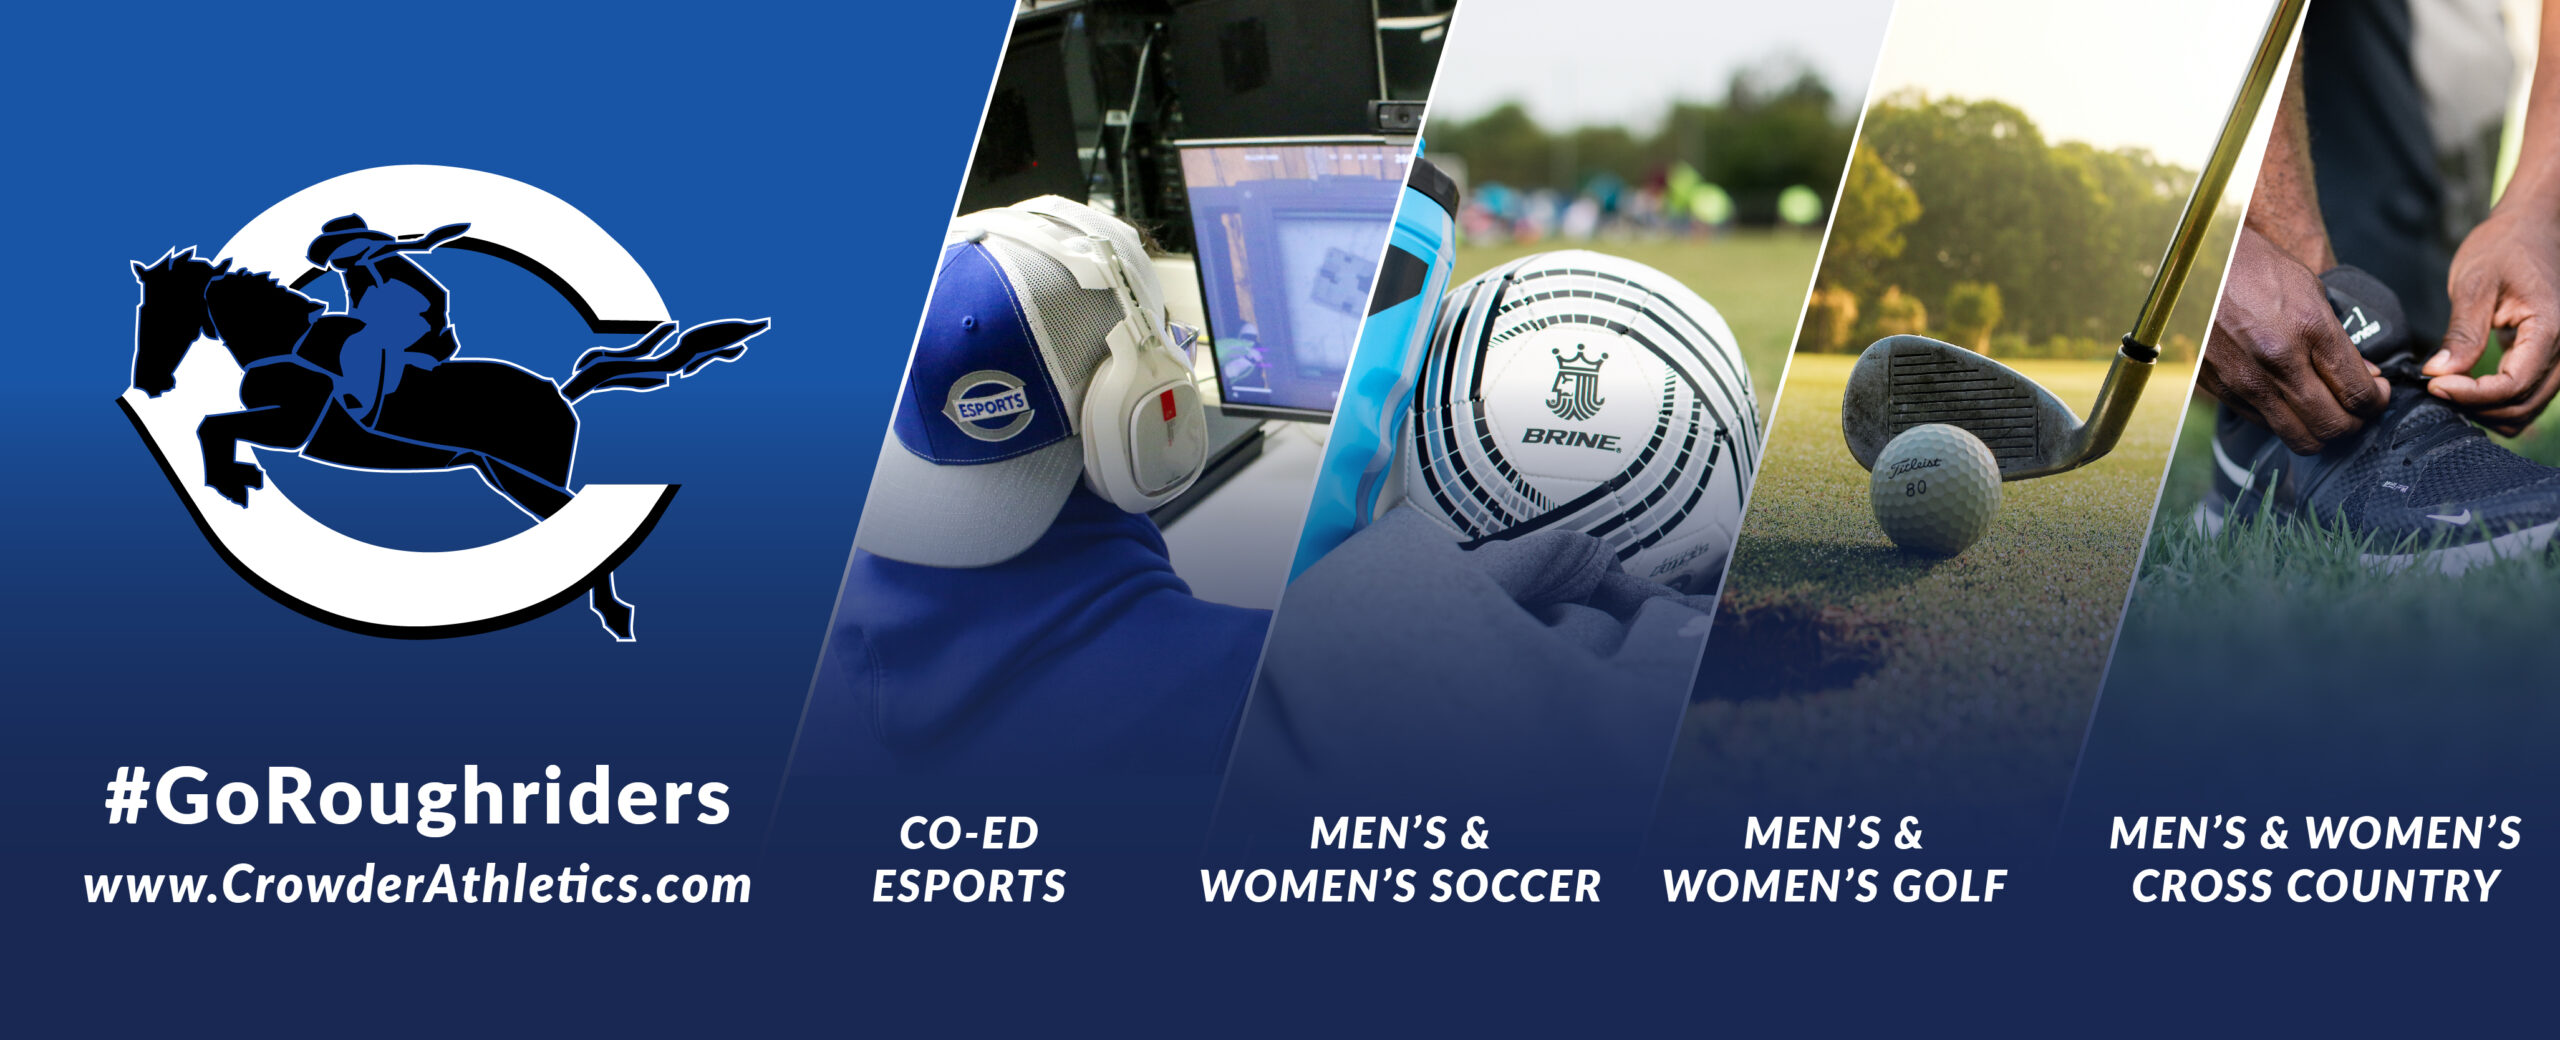 #GoRoughriders Co-Ed Esports. Men's & Women's Soccer. Men's & Women's Golf. Men's & Women's Cross Country